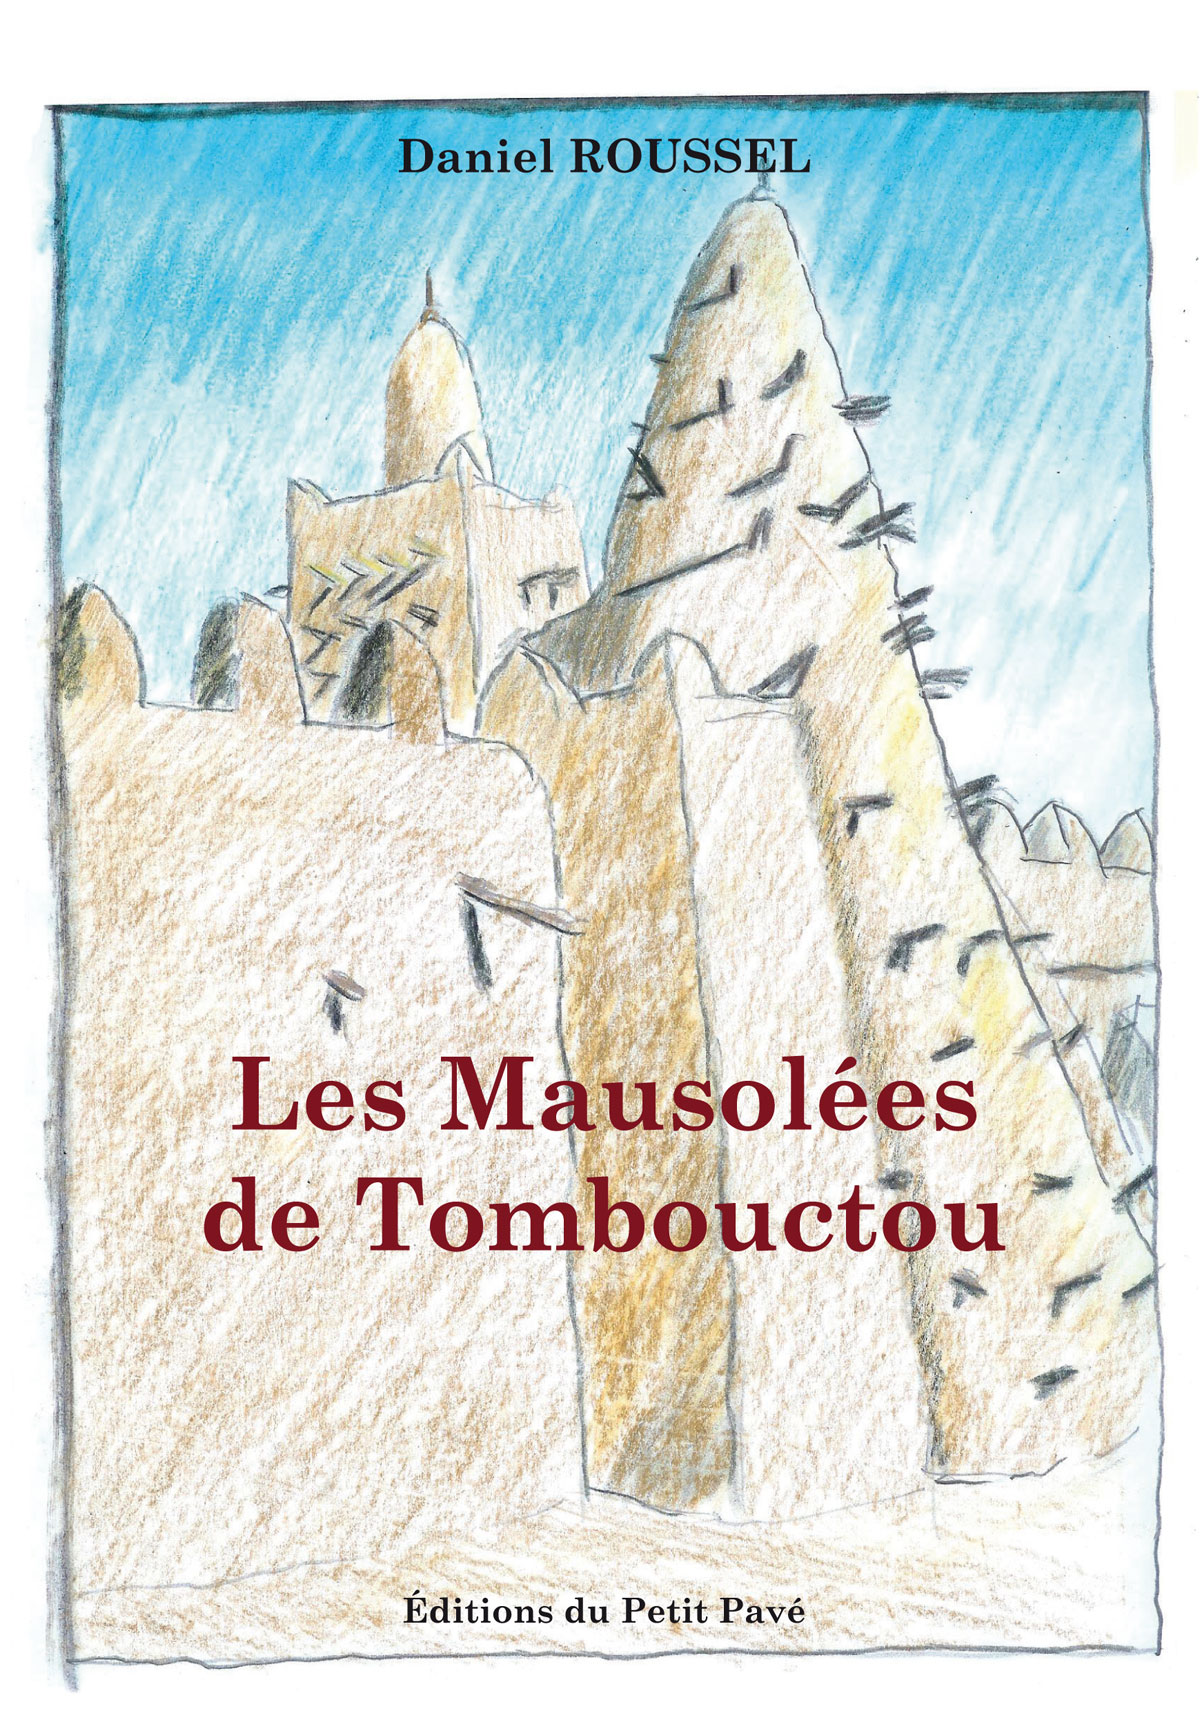 Les Mausolées de Tombouctou - Photo les_mausoless_de_tombouctou-de-daniel_roussel-aux-editions_du_petit_pave.jpg